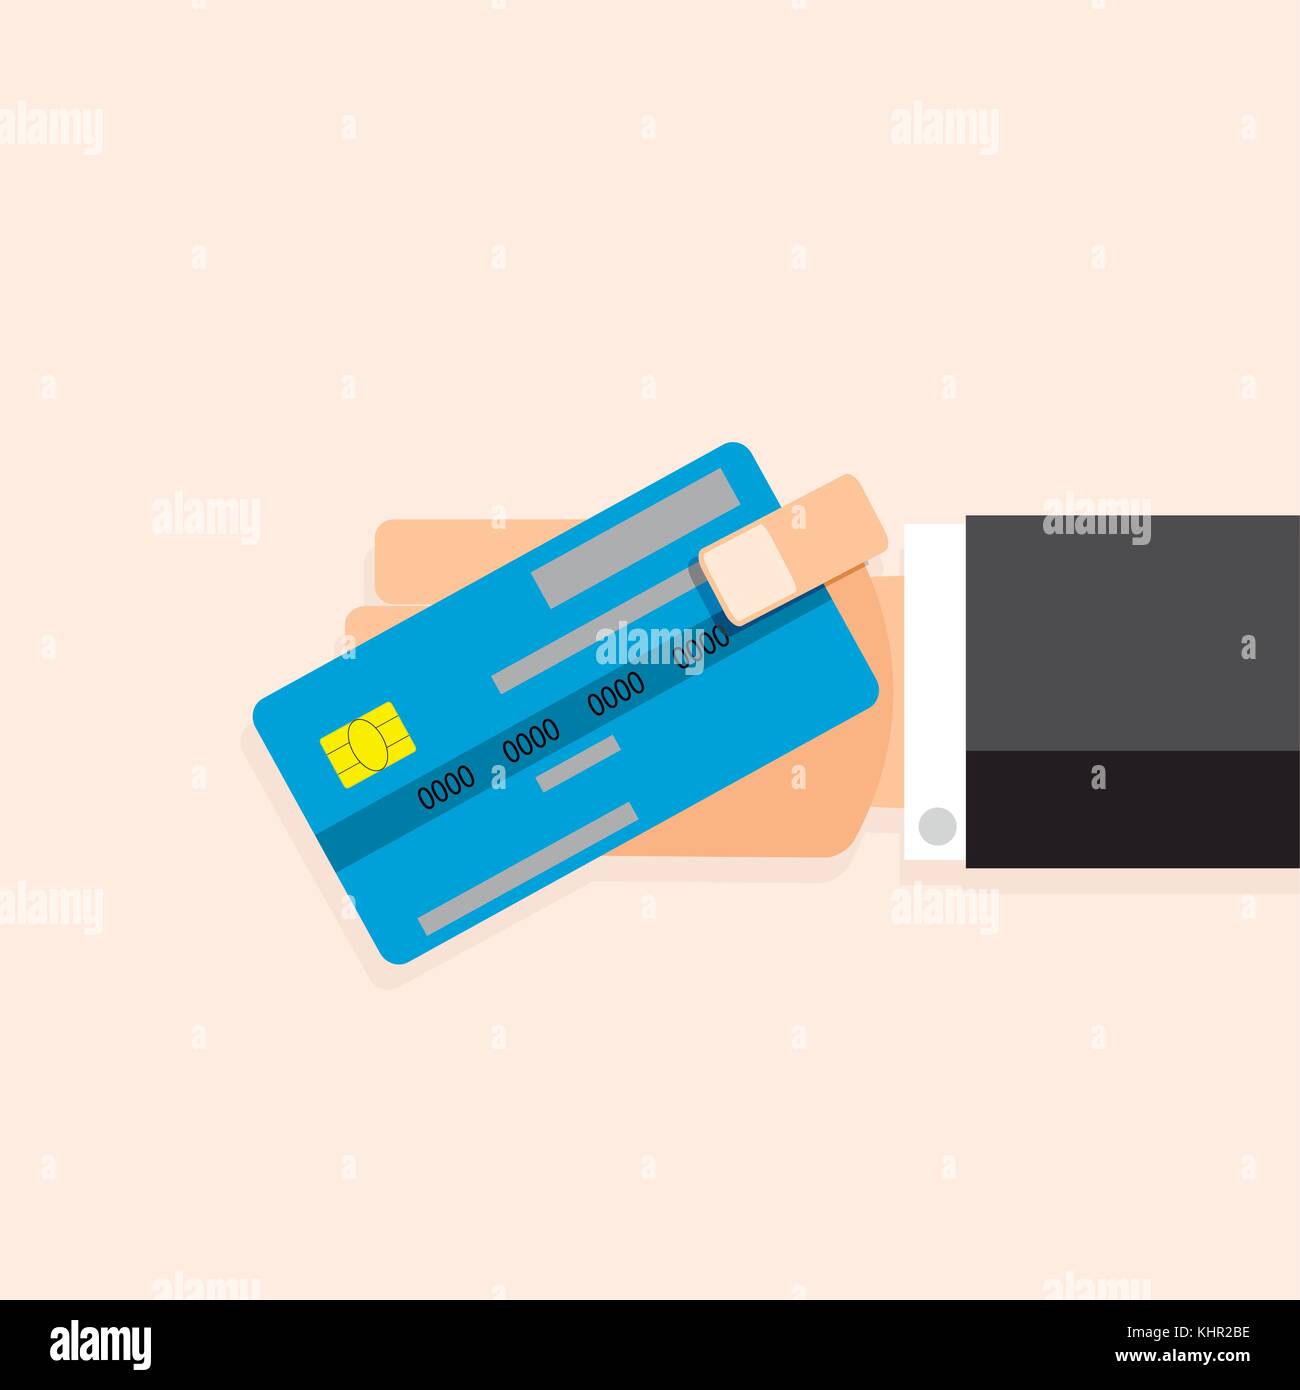 Kreditkarte in der Hand. Vektor kaufen und bezahlen, Banking und Einkaufen mit Karte Abbildung Stock Vektor